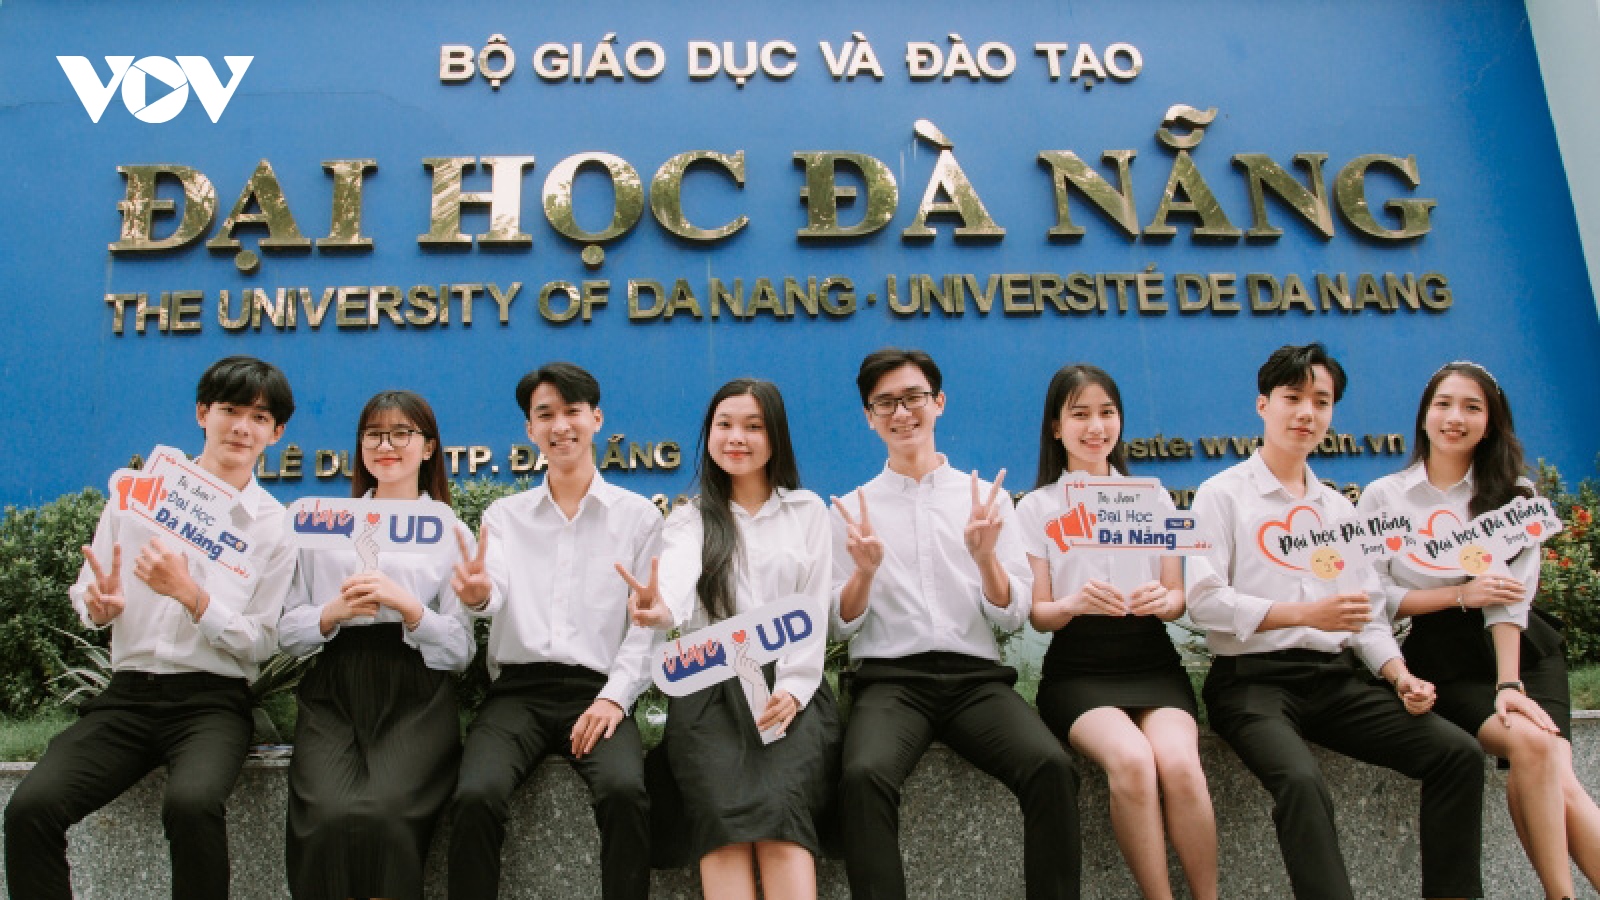 Nhiều trường thành viên Đại học Đà Nẵng mở rộng tuyển sinh riêng